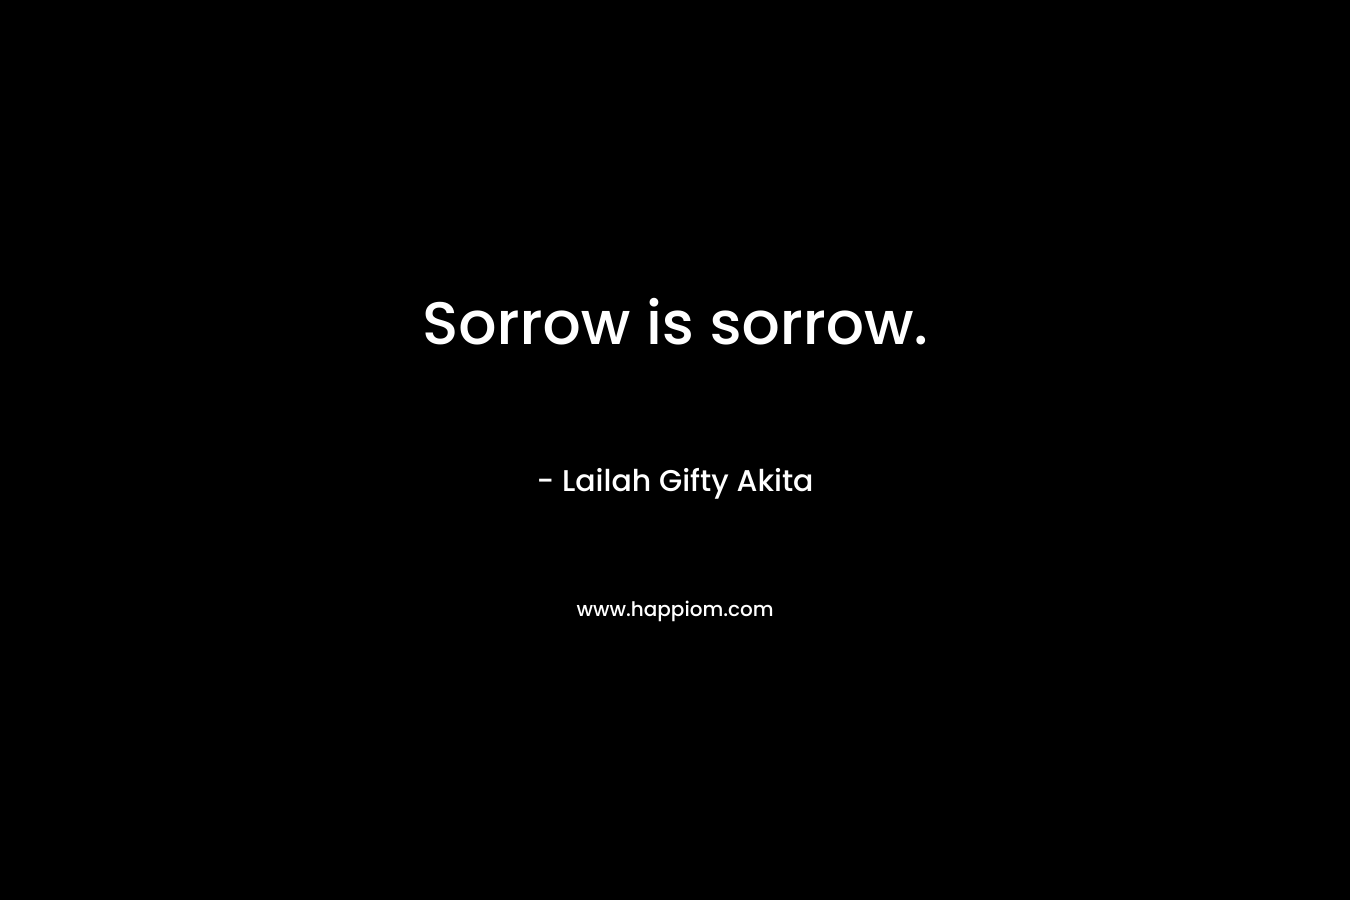 Sorrow is sorrow.